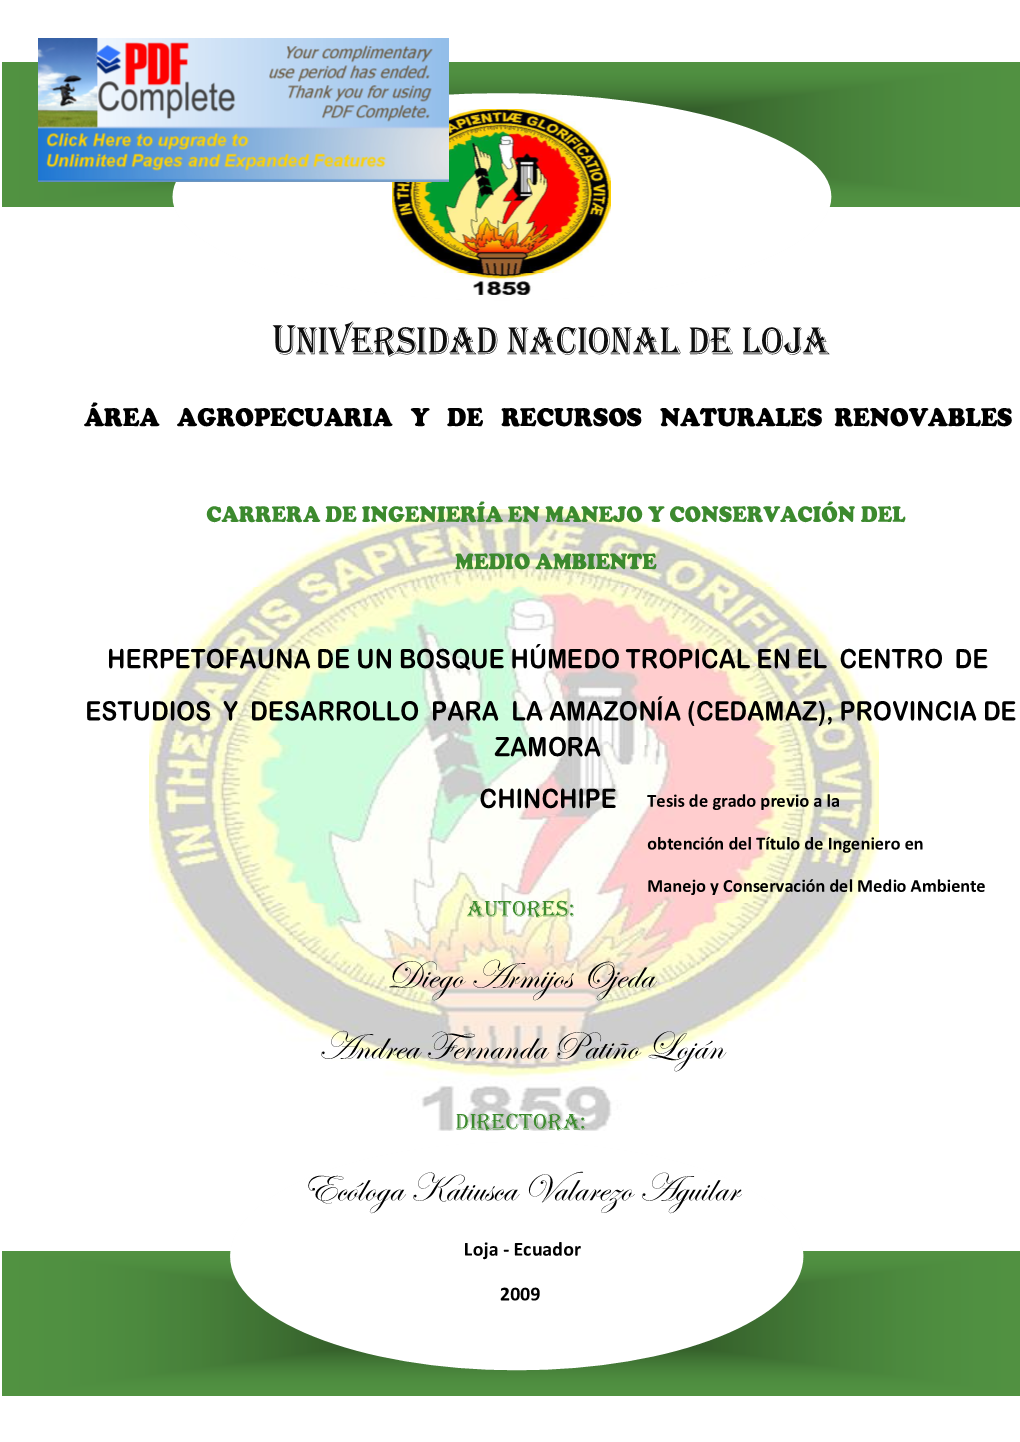 Herpetofauna De Un Bosque Húmedo Tropical En El Centro De Estudios Y Desarrollo Para La Amazonía (Cedamaz), Provincia De Zamora